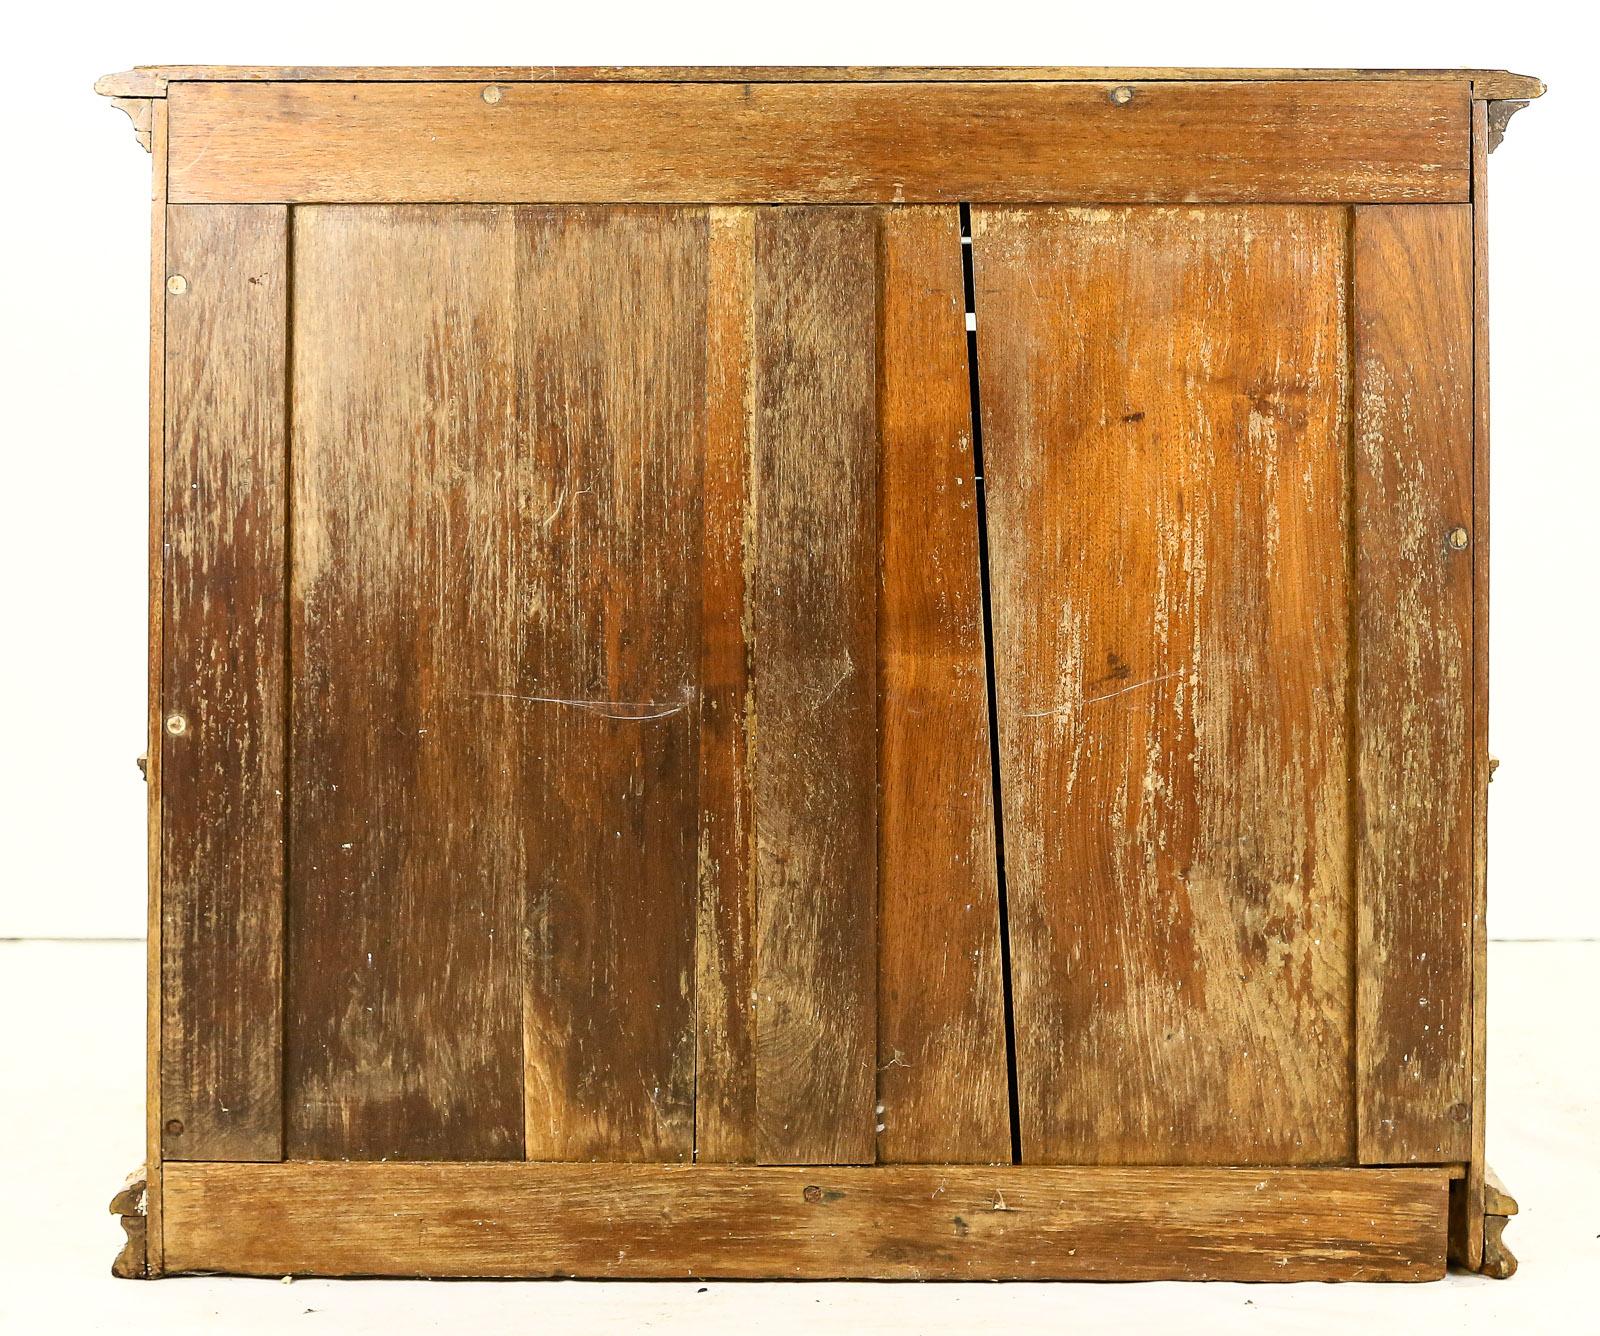 Vintage Wood Spool Cabinet